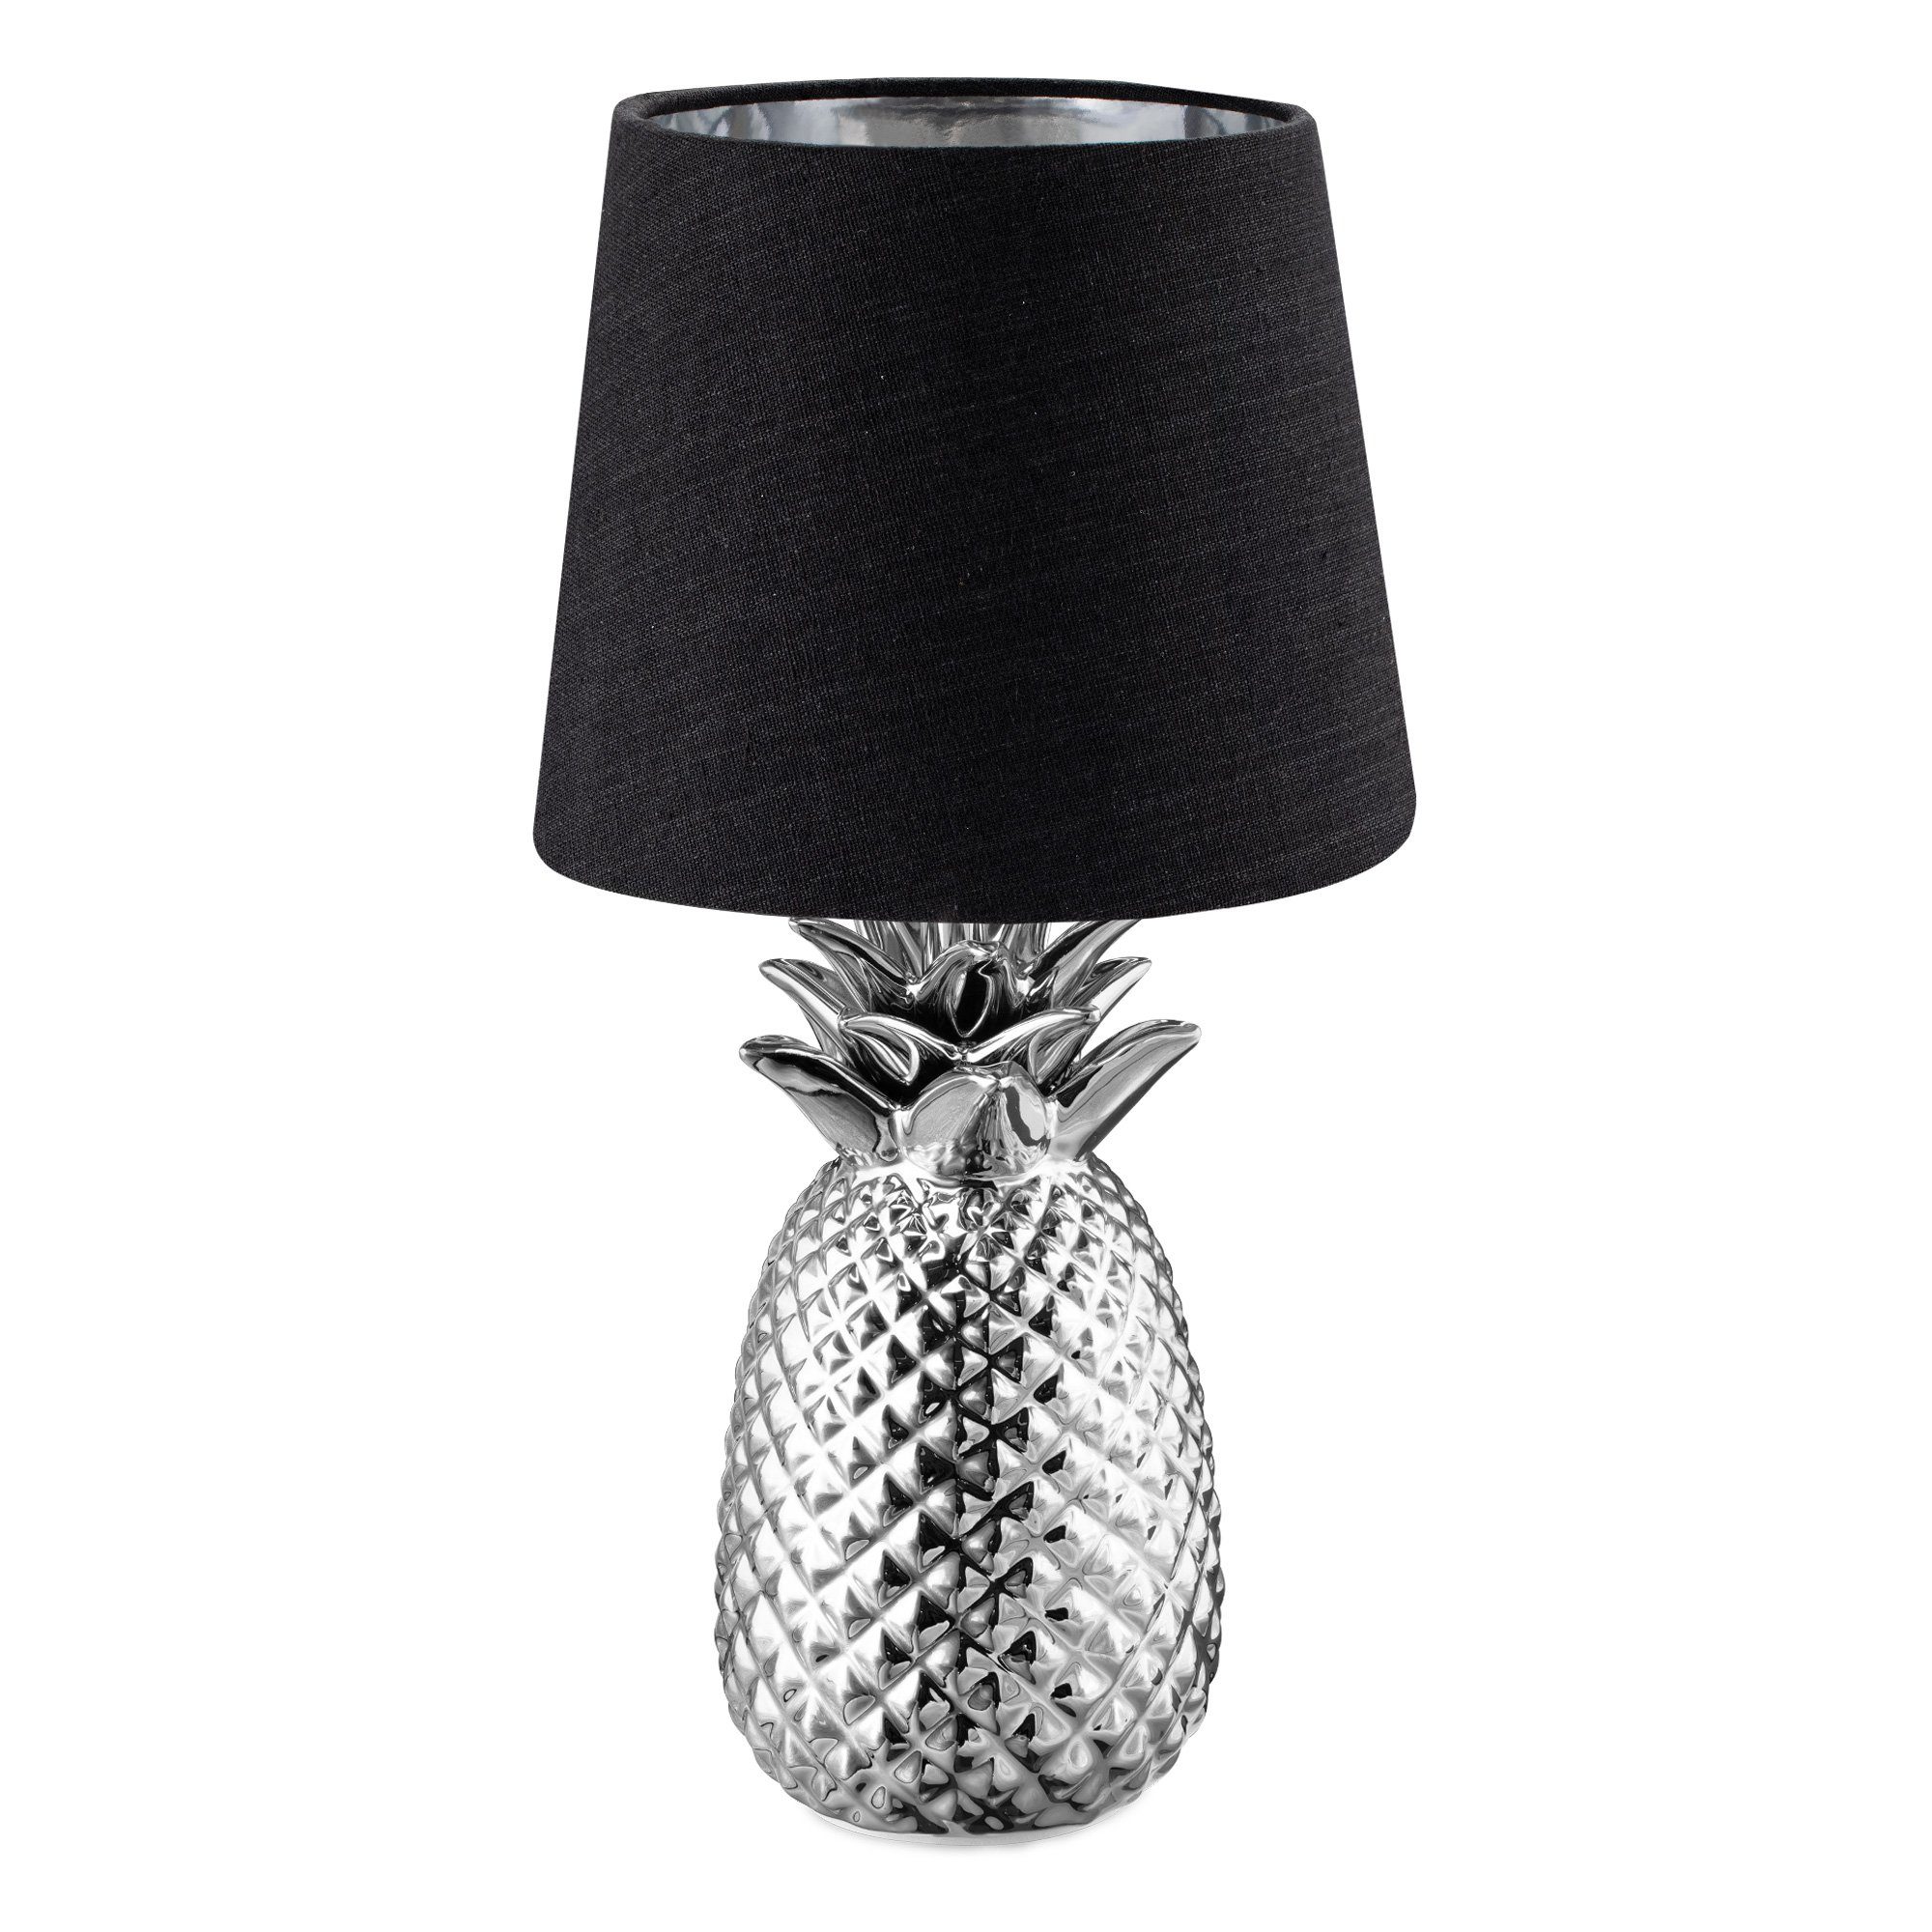 Navaris Tischleuchte Tischlampe Ananas Design - 35cm hoch - Dekolampe mit E14 Gewinde Silber